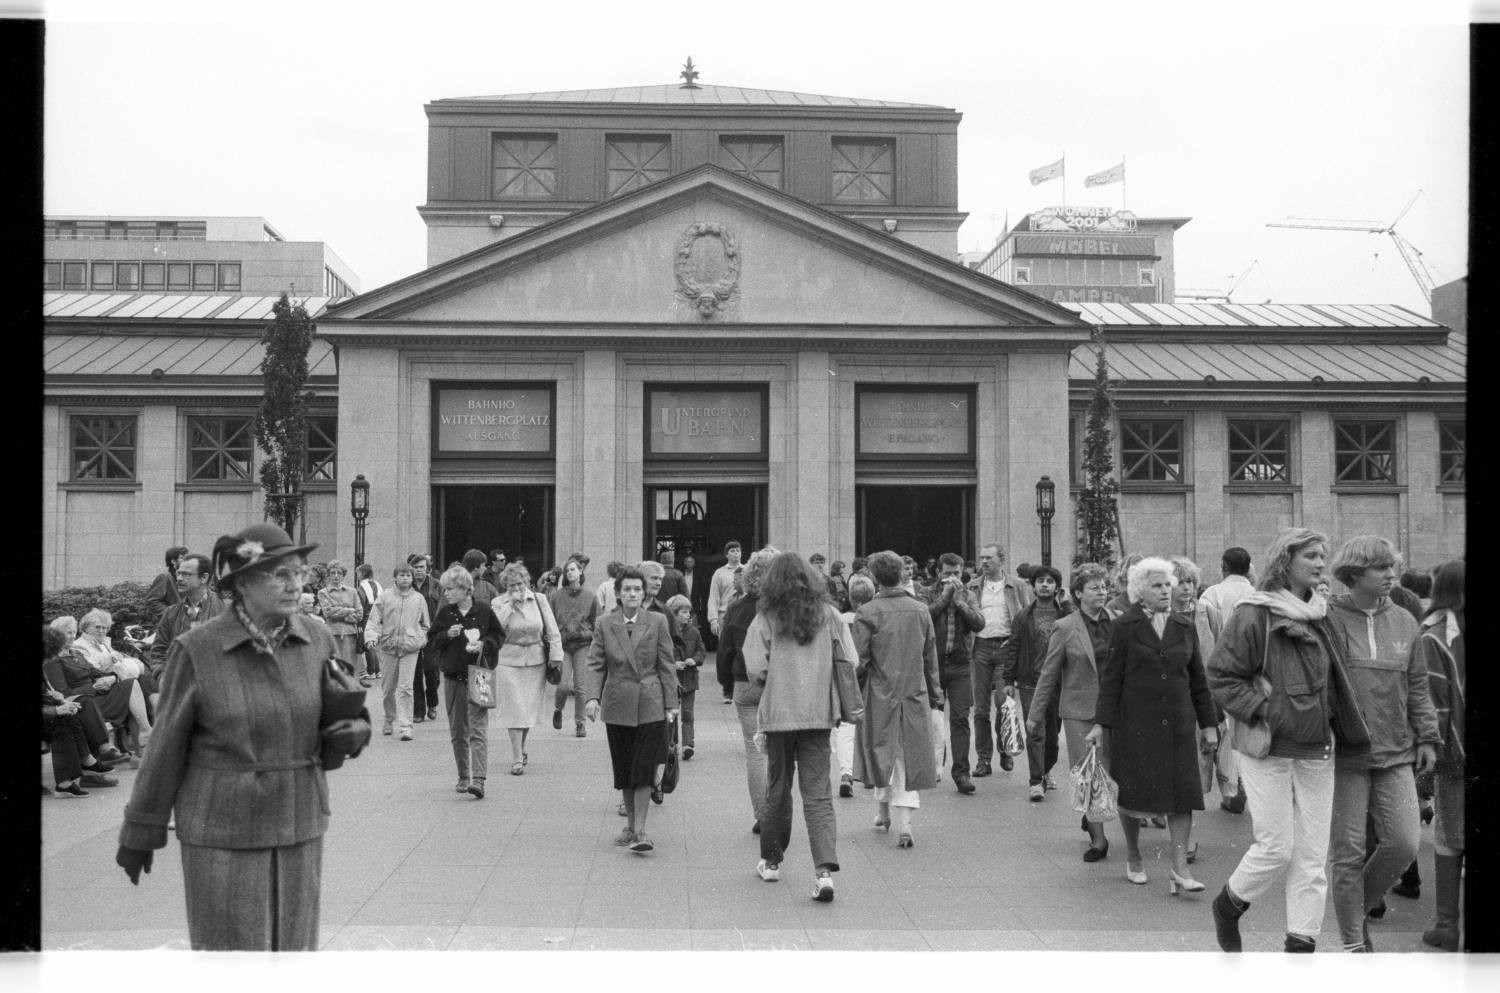 Kleinbildnegative: U-Bahnhof Wittenbergplatz, 1984 (Museen Tempelhof-Schöneberg/Jürgen Henschel RR-F)